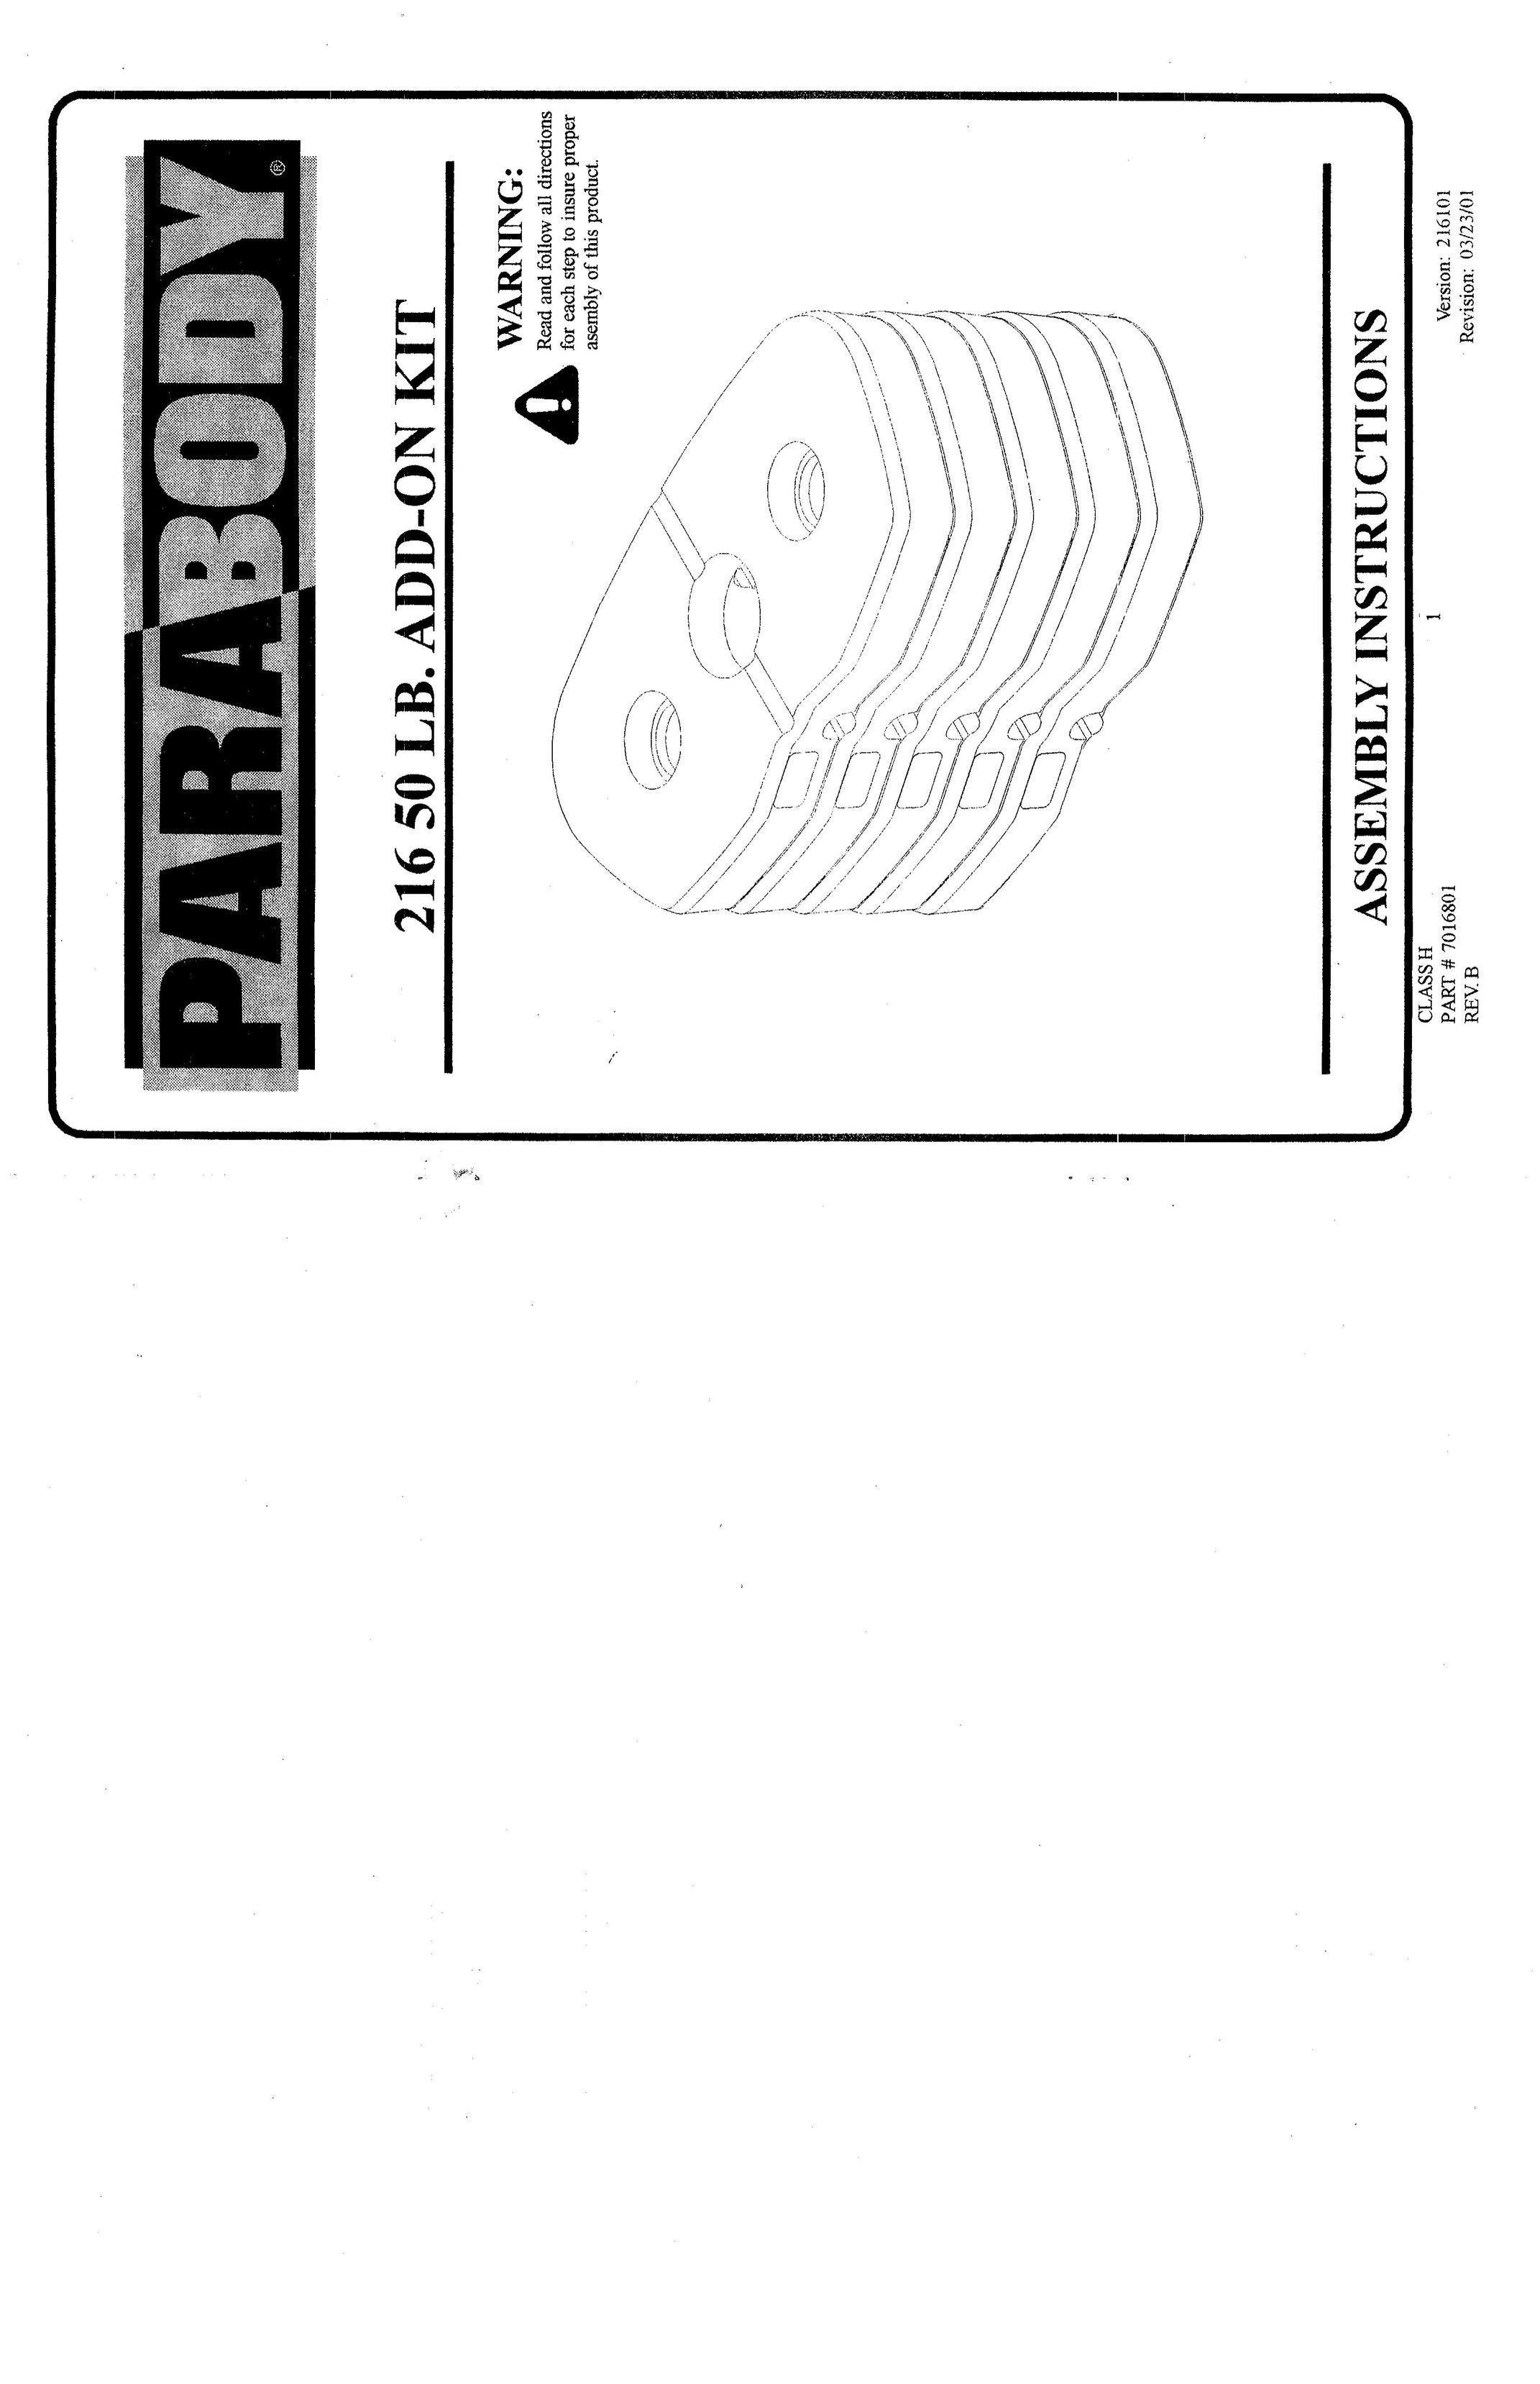 ParaBody 216 50 LB Home Gym User Manual